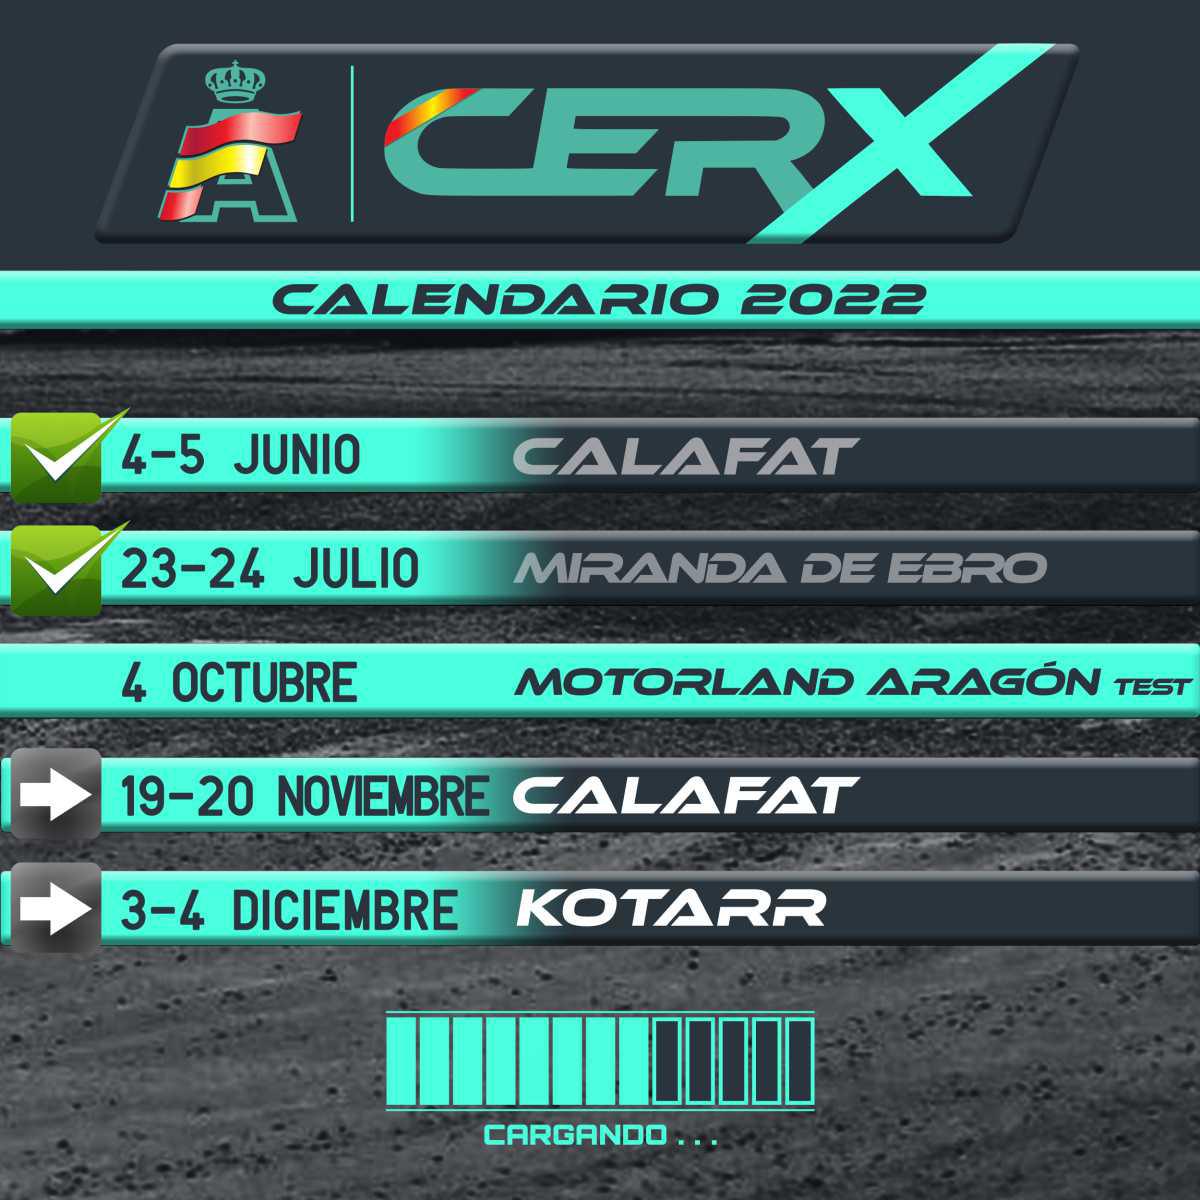 Calafat y Kotarr completan la temporada inaugural de la CERX